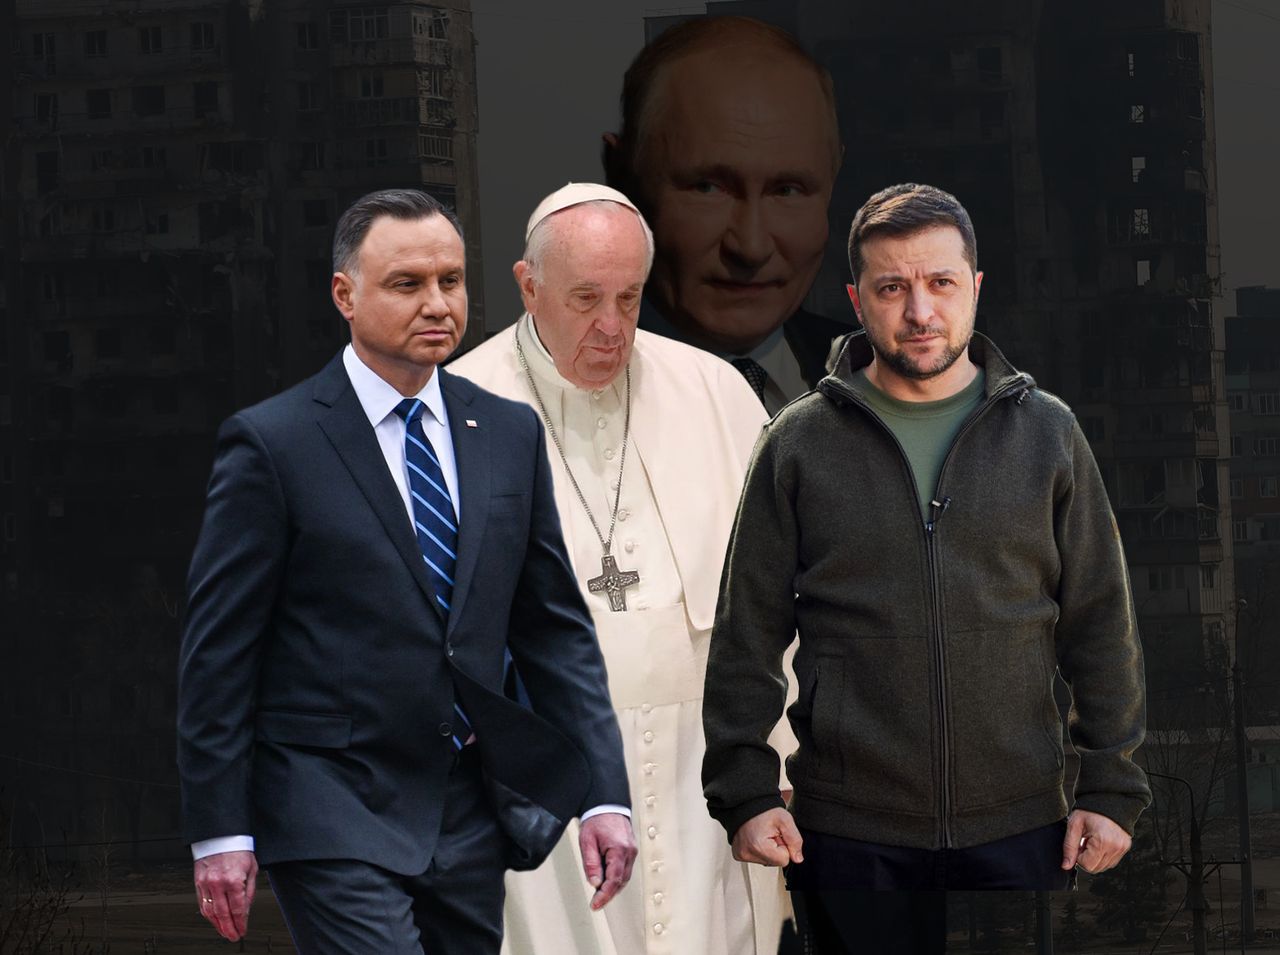 Kompromitacja Watykanu w obliczu inwazji na Ukrainę. Duda chciałby zmienić podejście papieża